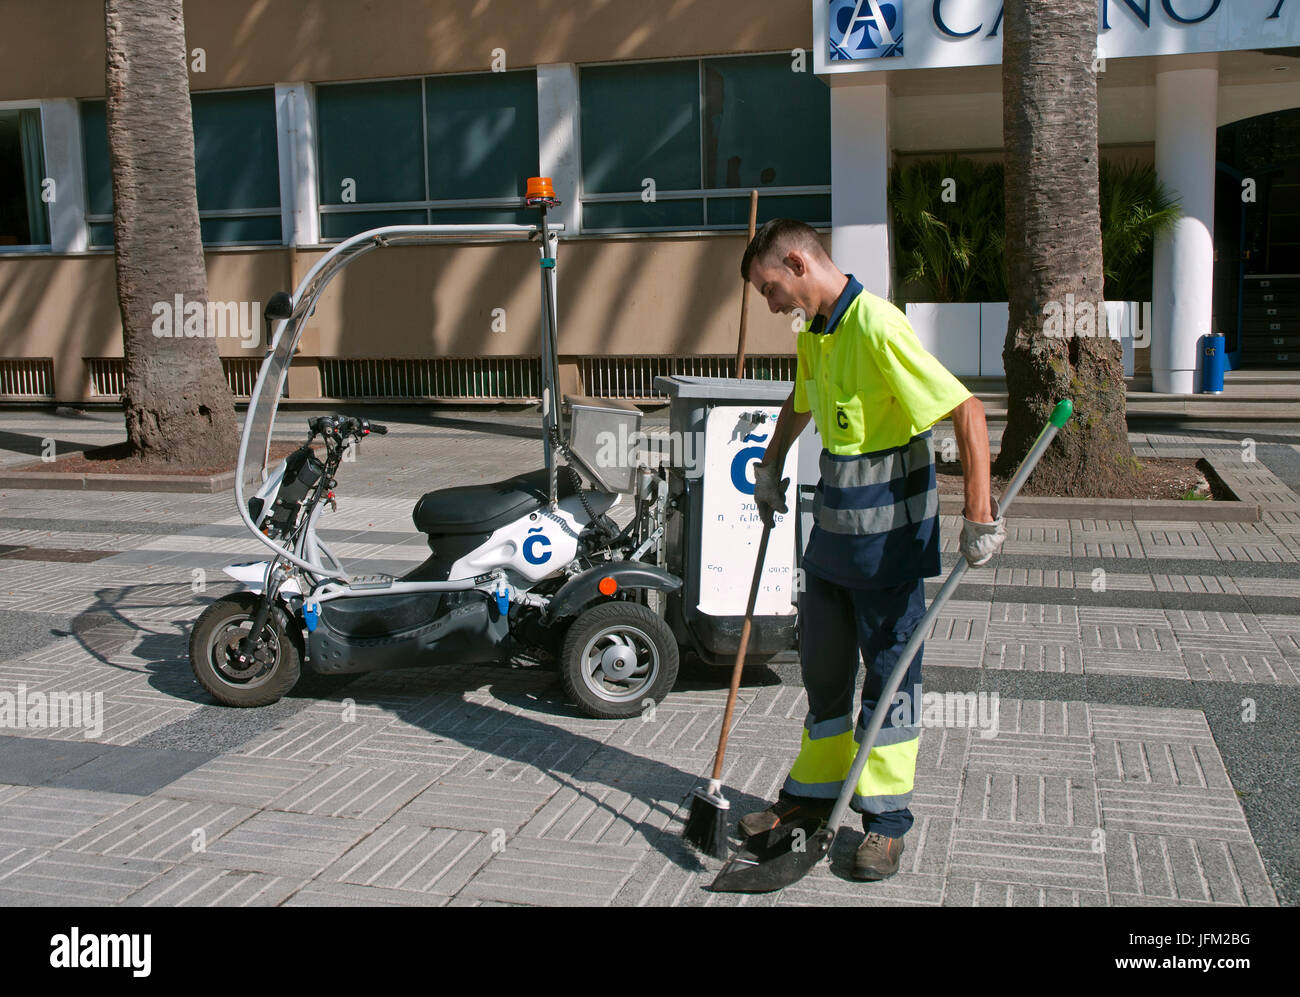 Pubblico Servizio di pulizia, La Coruna, regione della Galizia, Spagna, Europa Foto Stock